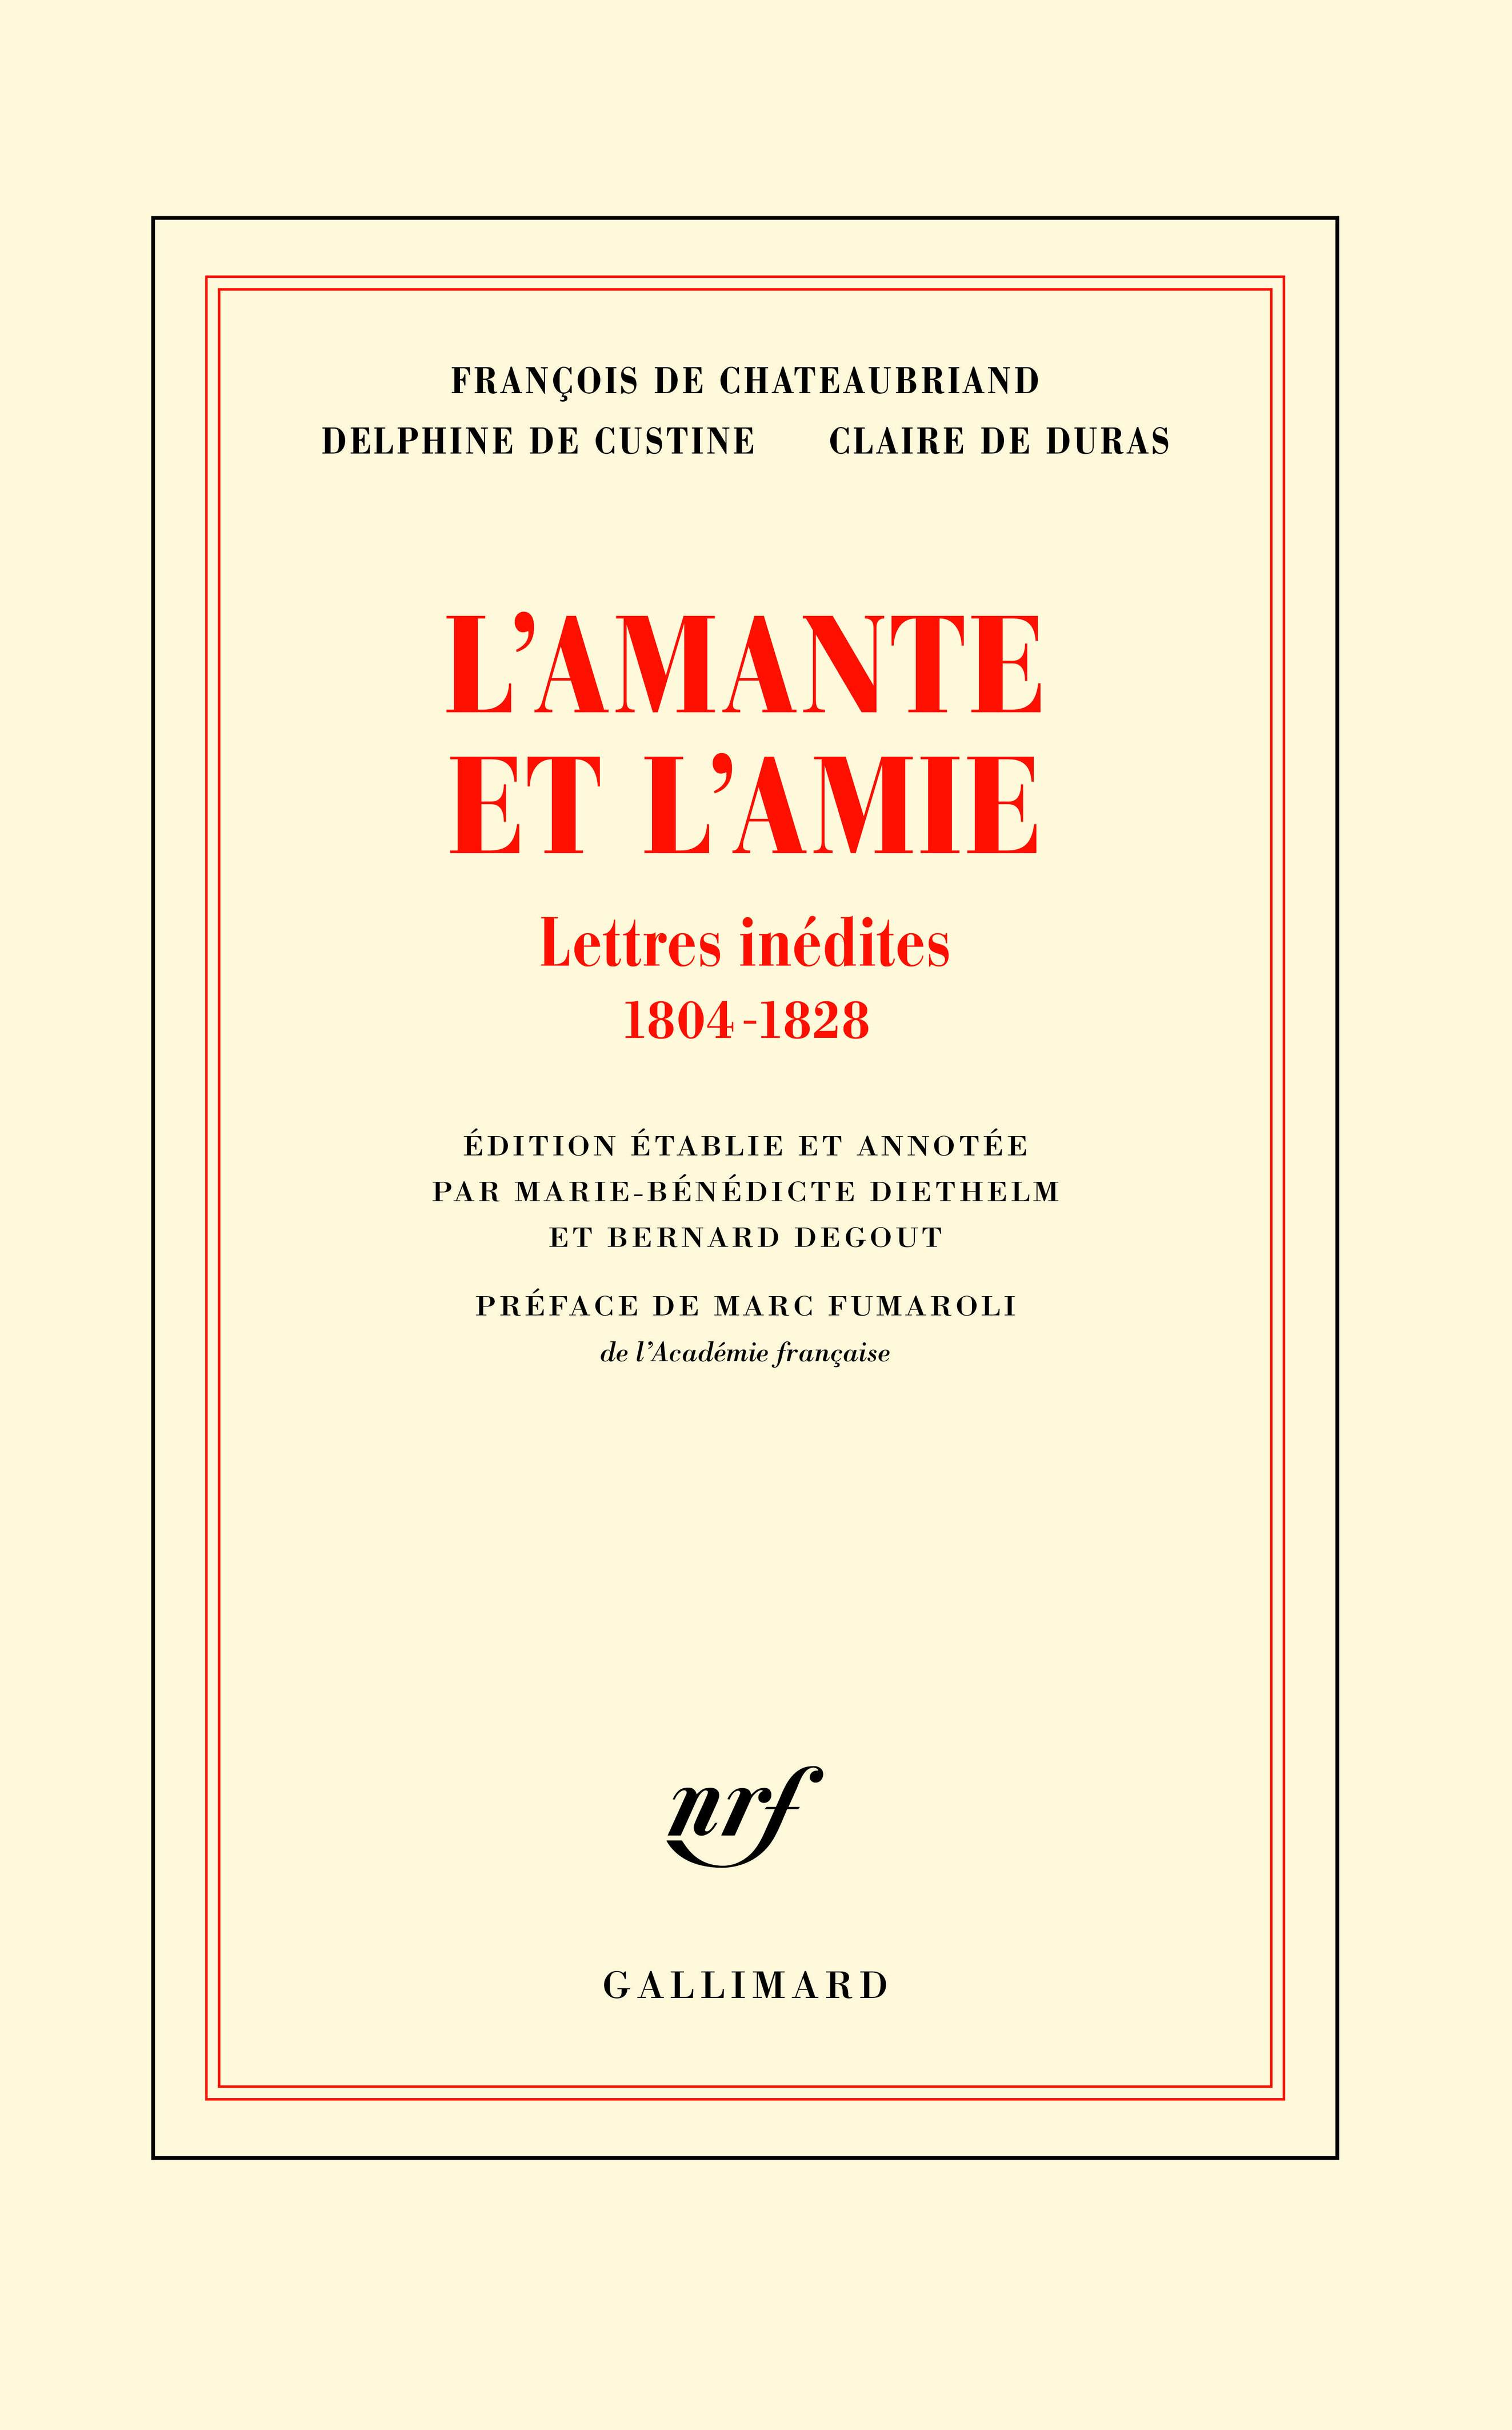 Chateaubriand, Custine, Duras, L'amante et l'amie. Lettres inédites 1804-1828